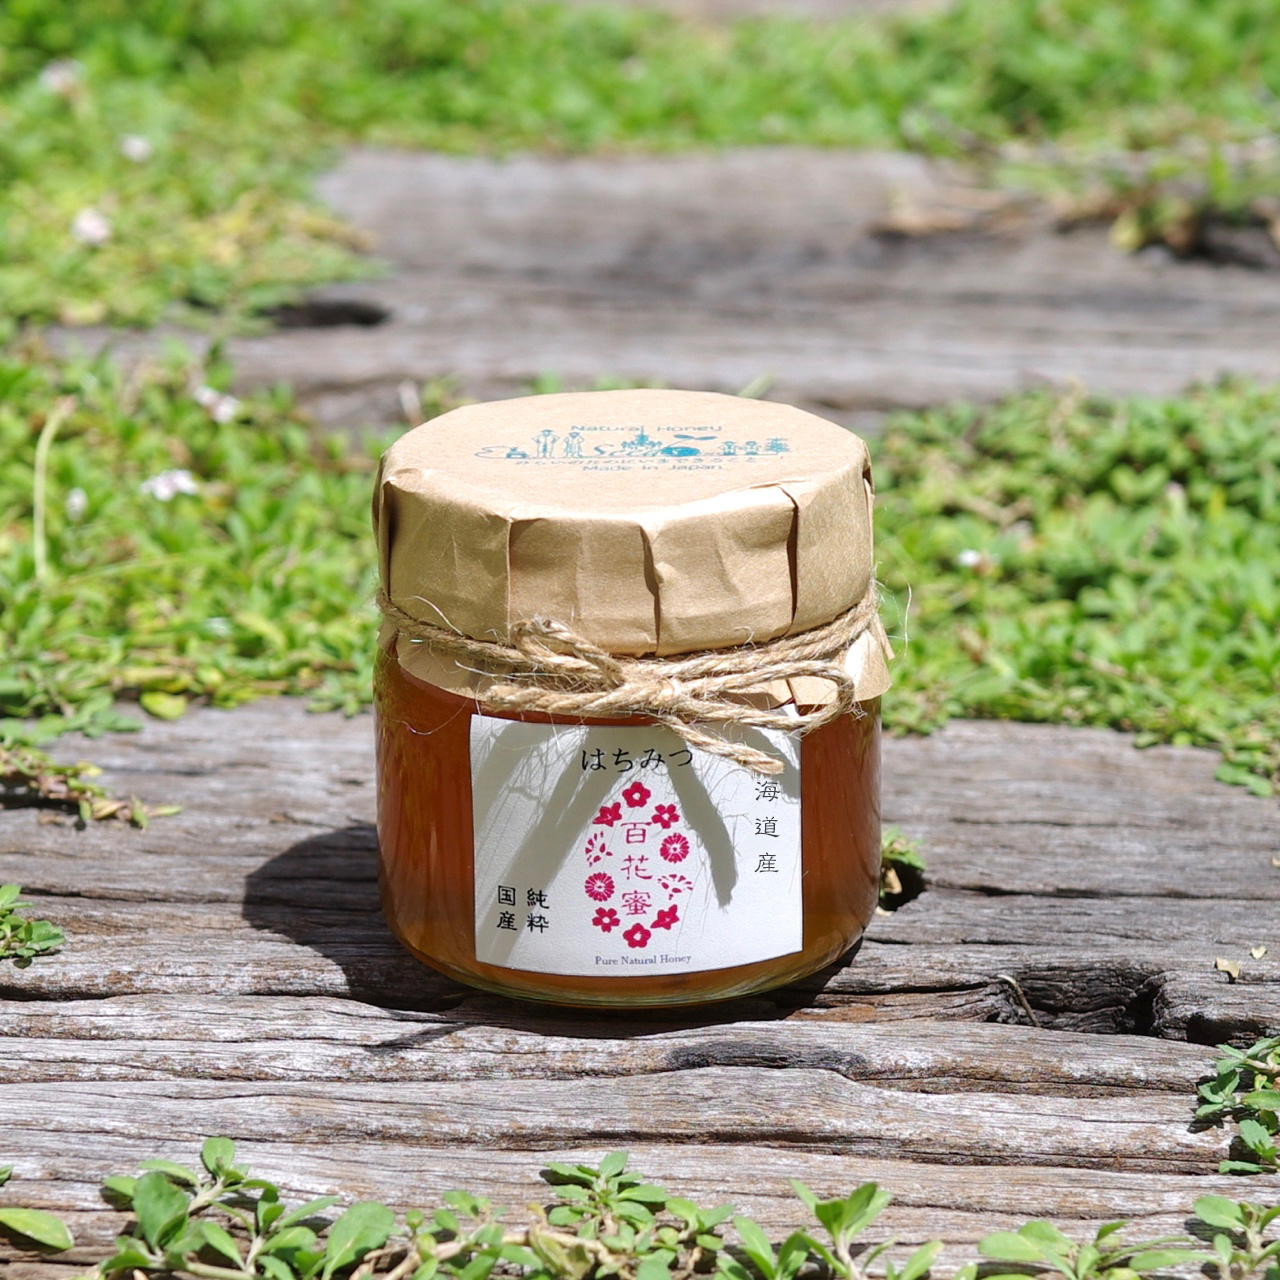 国産はちみつ(純粋蜂蜜)の通販はSeedstime・・栄養満点の安心で美味しい国産純粋ハチミツを北海道の養蜂家から・・笑顔の食卓のために